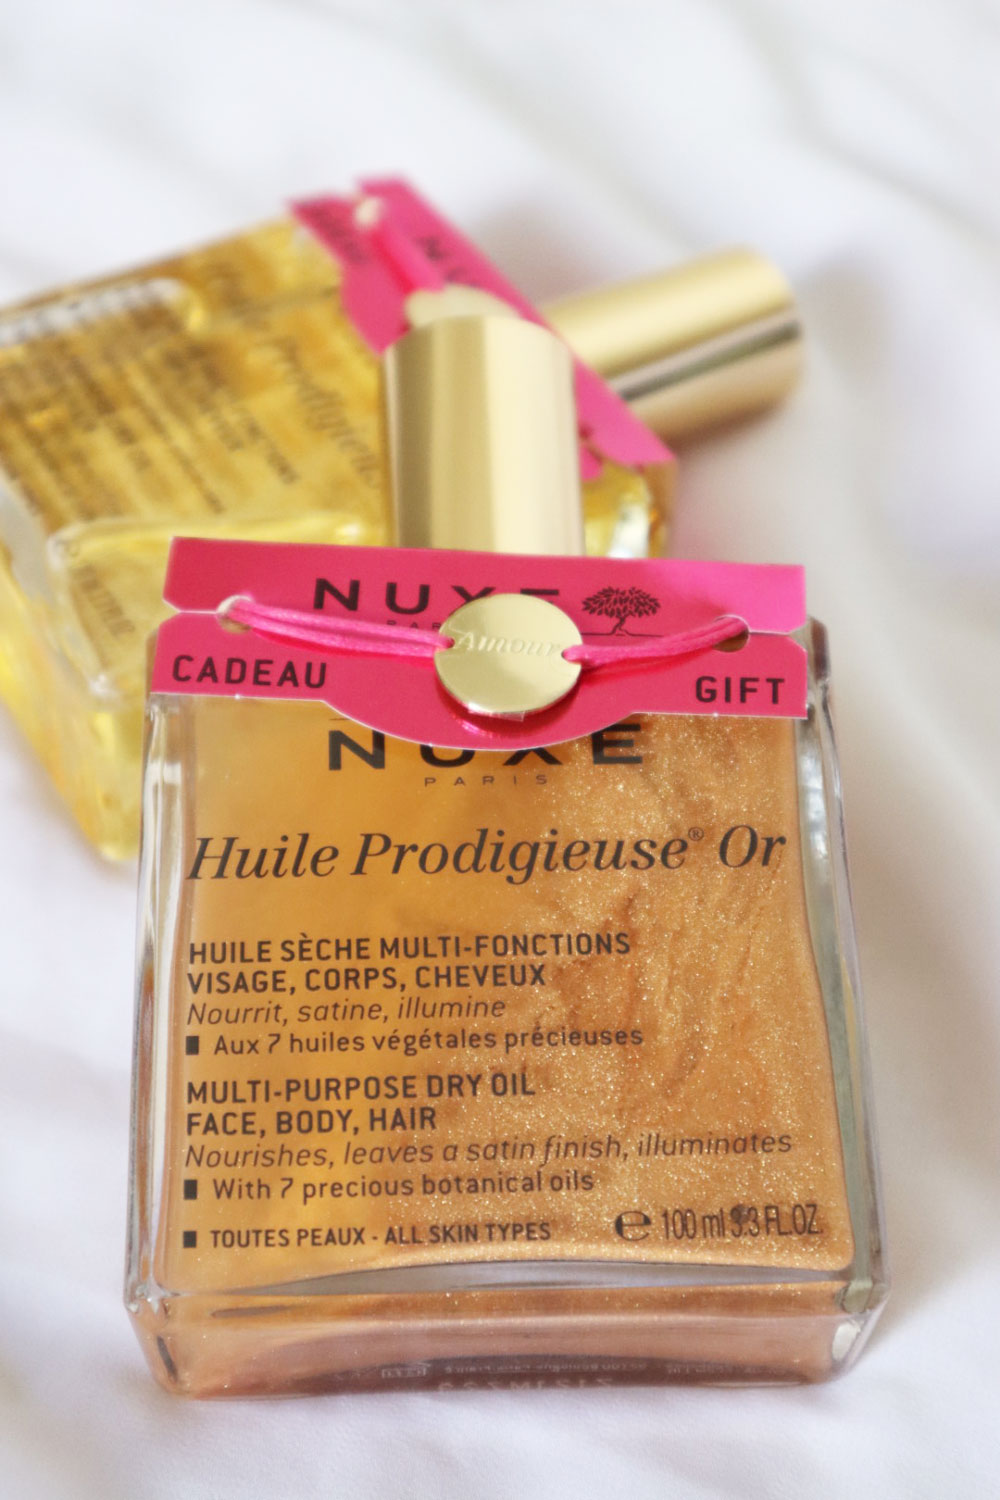 Nuxe lanciert eine limitierte Auflage des Beauty-Klassikers Huile Prodicieuse, zu dem ein hübscher Glücksbringer gehört.